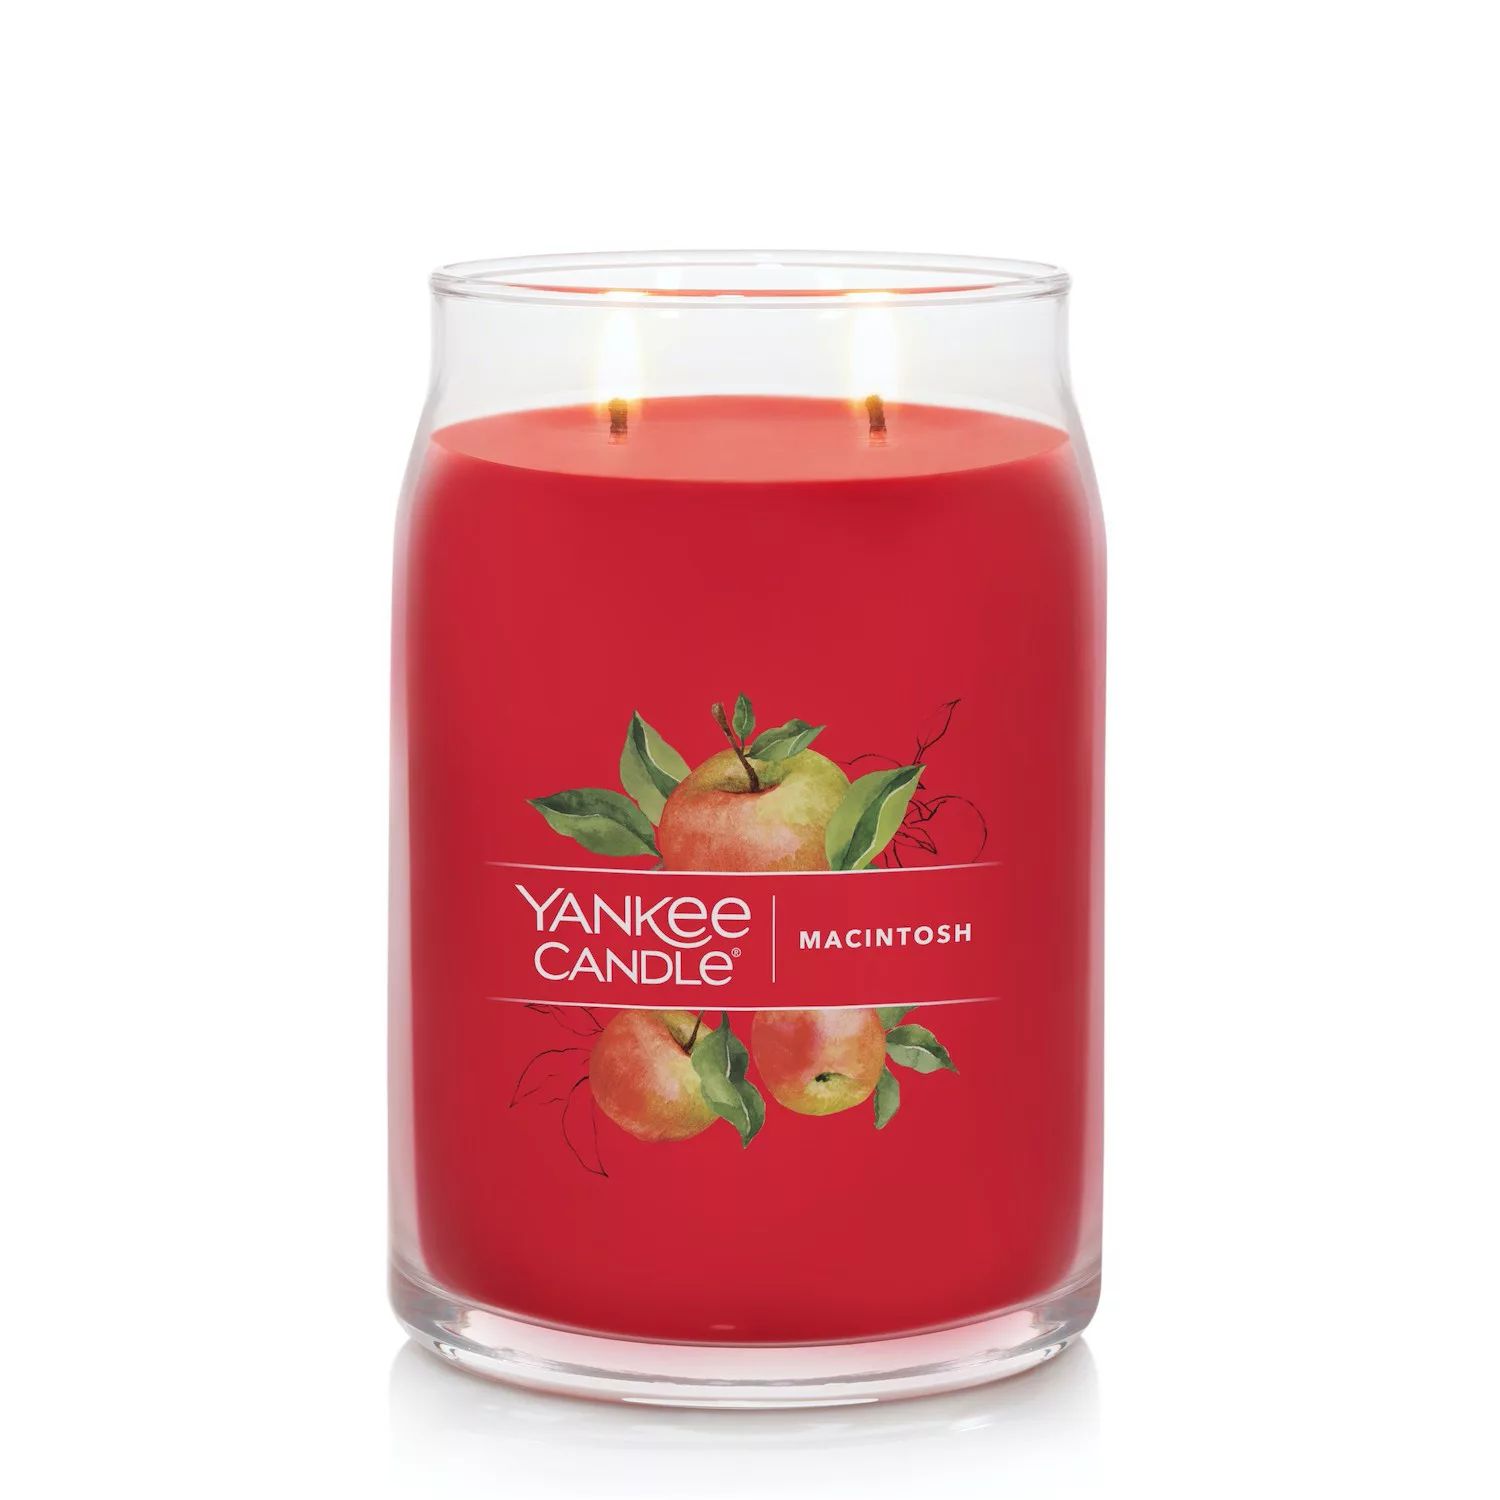 Yankee Candle Macintosh, 20 унций. Фирменная большая банка для свечей